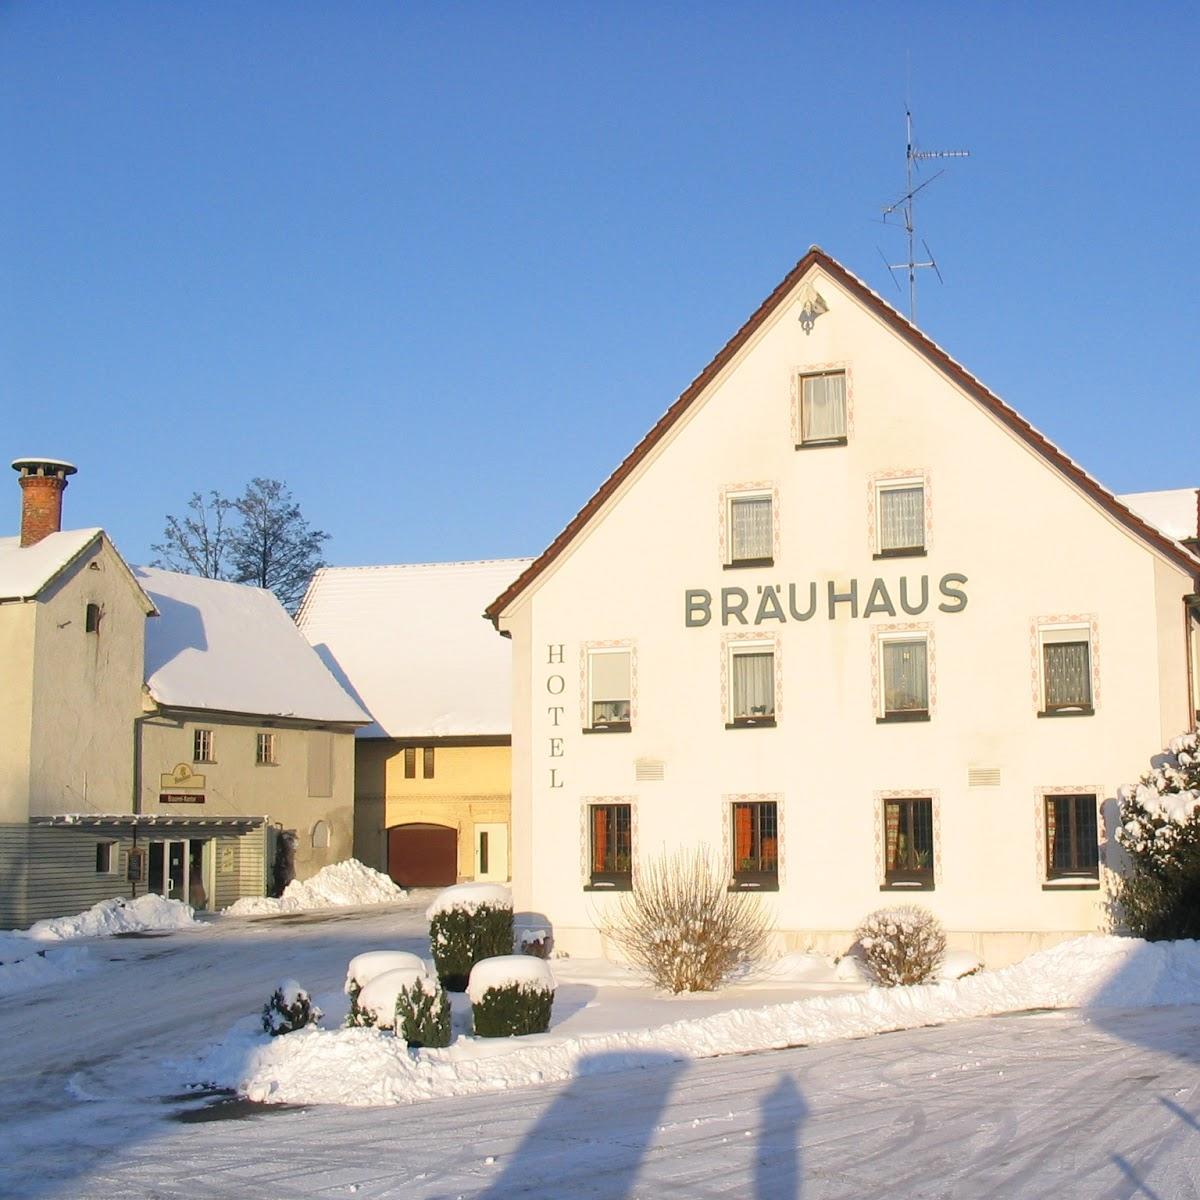 Restaurant "Bräuhaus" in Ummendorf